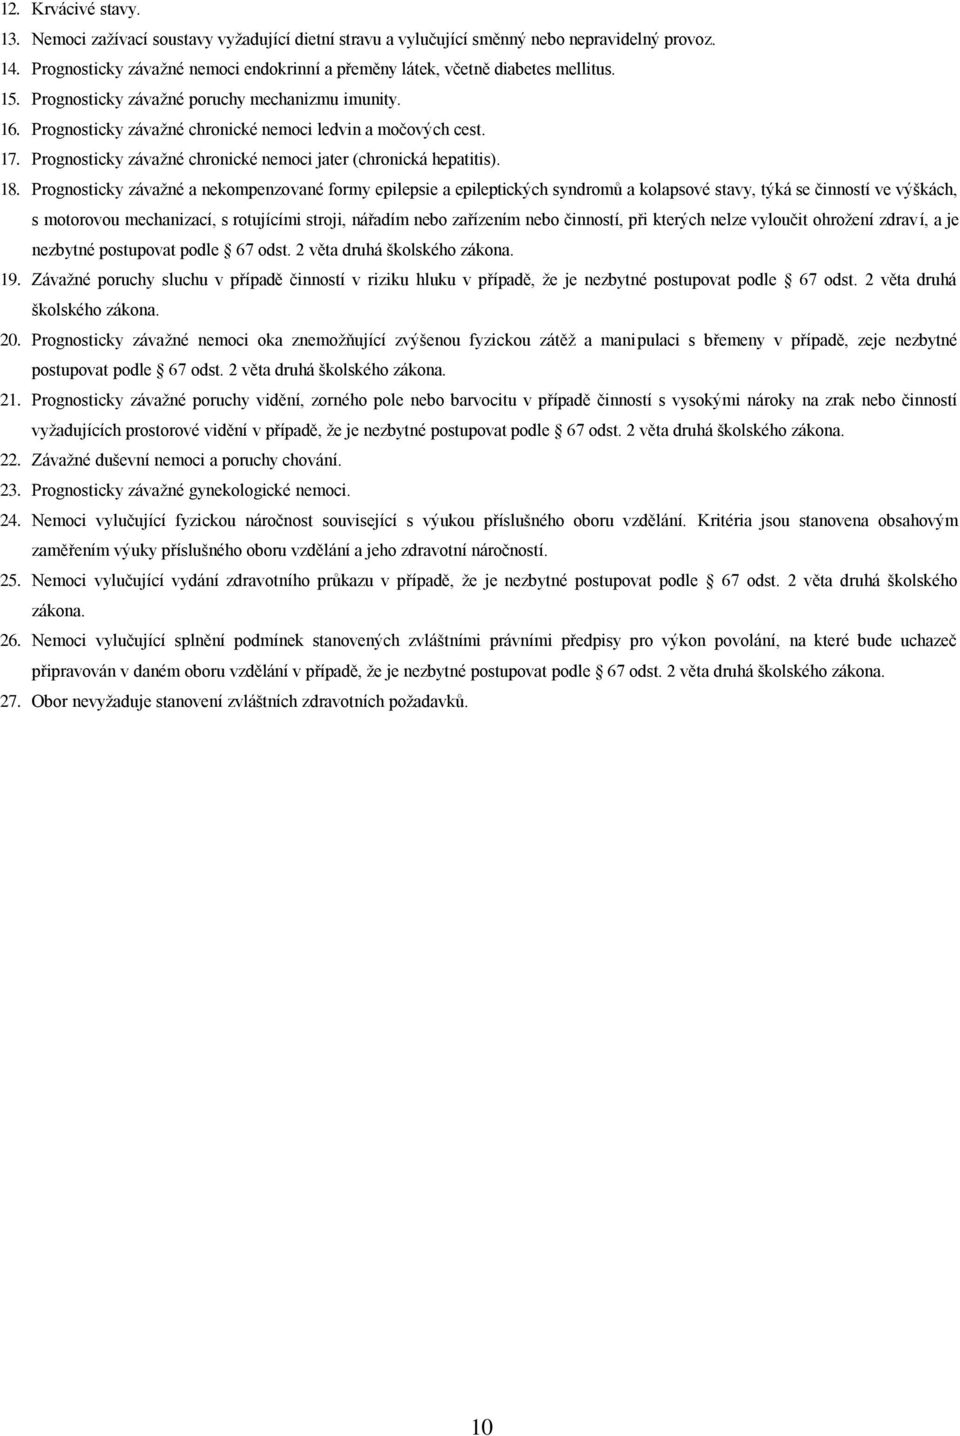 17. Prognosticky závažné chronické nemoci jater (chronická hepatitis). 18.